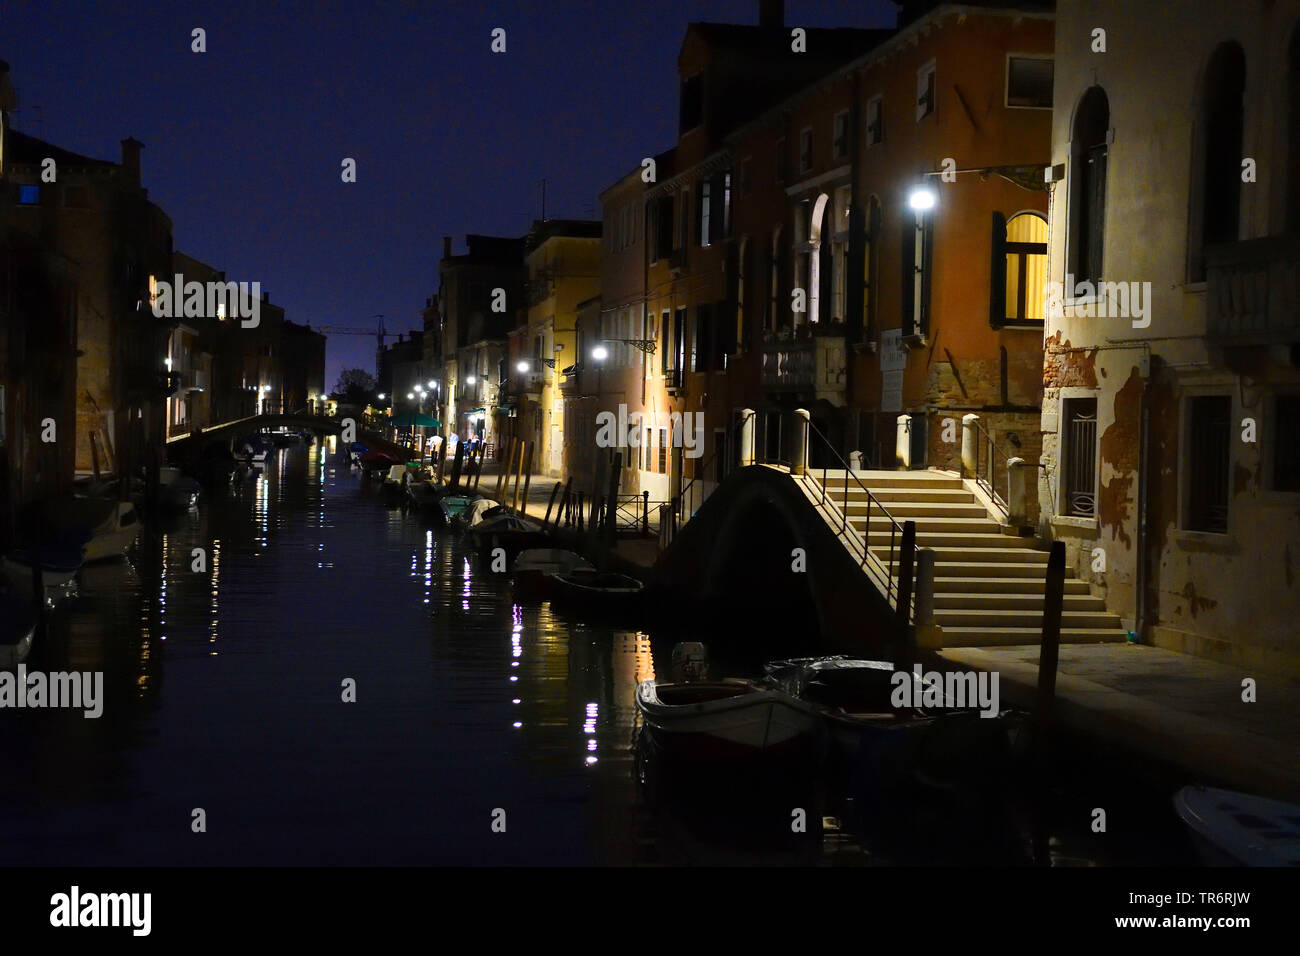 canal in Venice at night, Italy, Cannaregio, Venice Stock Photo